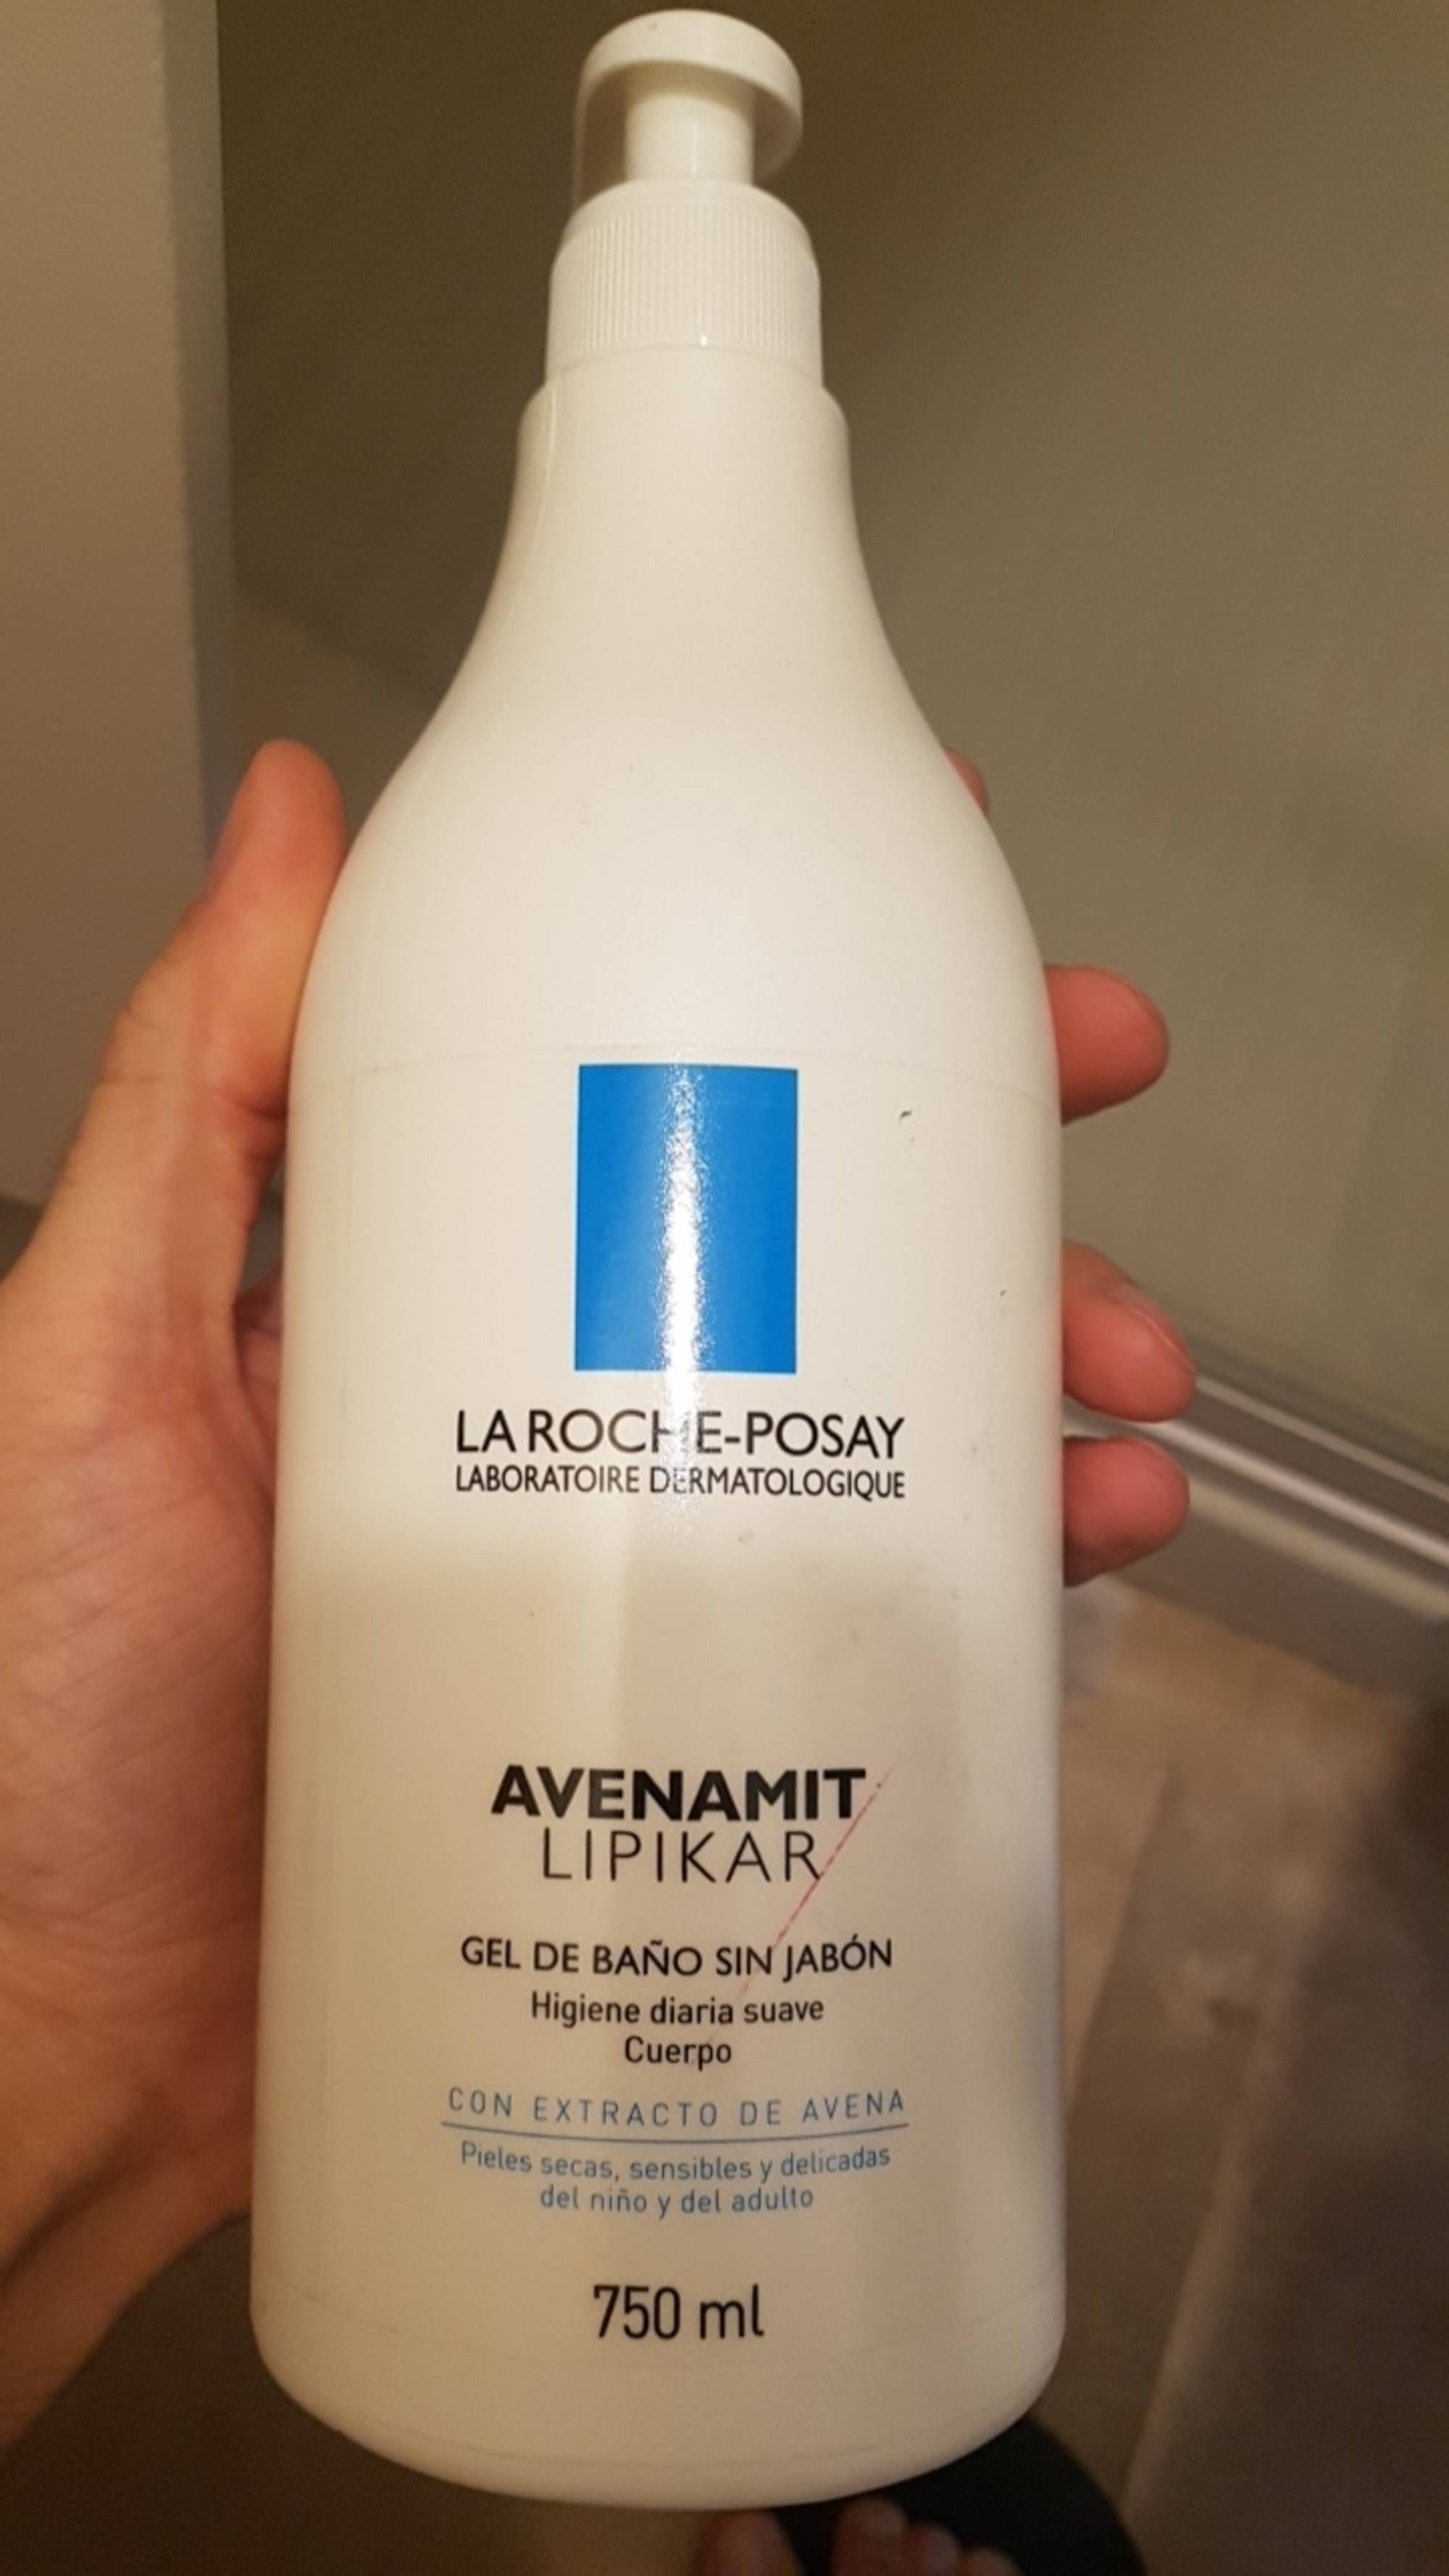 LA ROCHE-POSAY - Avenamit lipikar - Gel de baño sin jabón